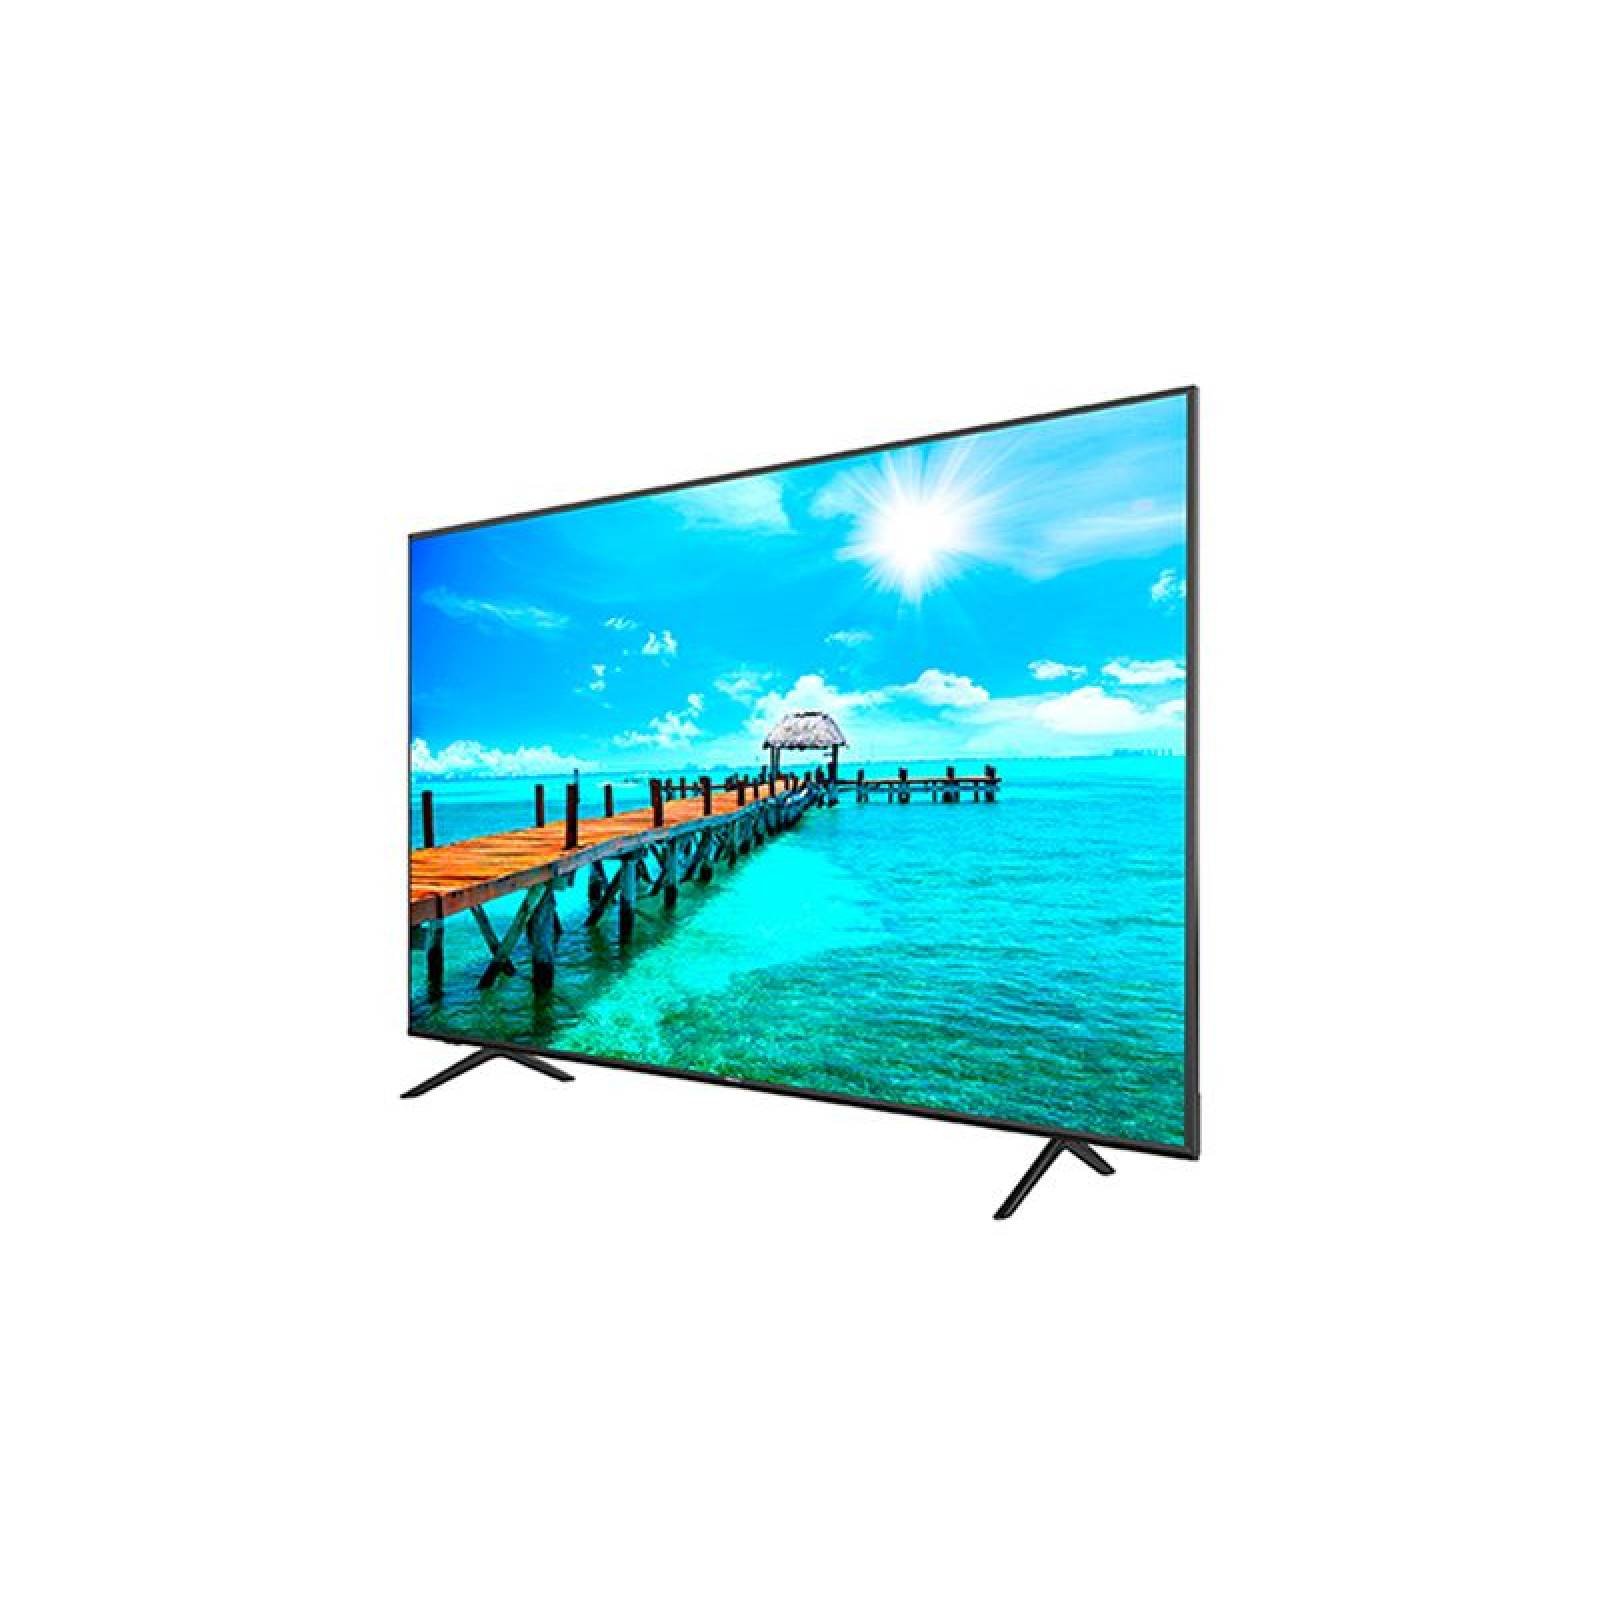 TV HISENSE 75 PULGADAS LED 4K UHD ANDROID SMART TV 75H6570G